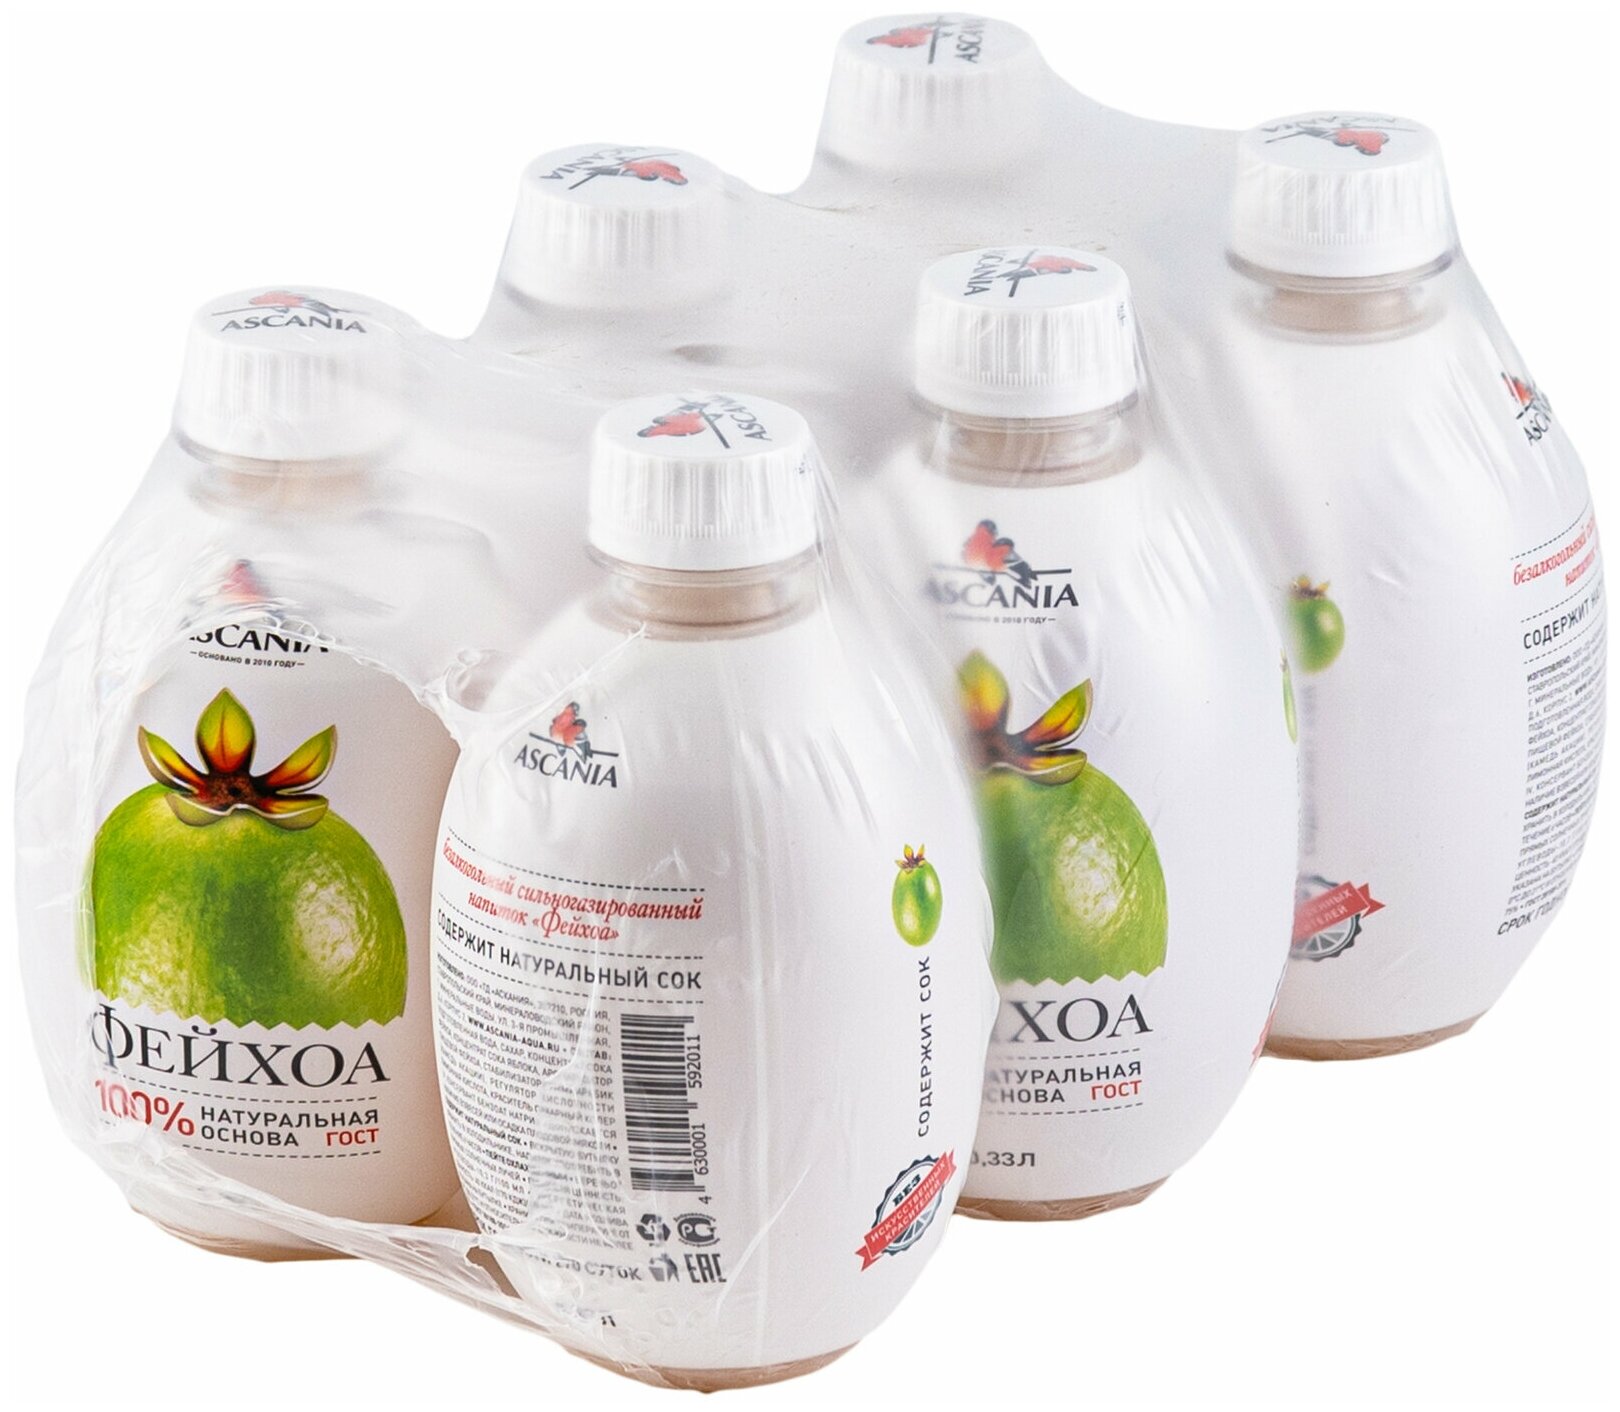 Газированный натуральный лимонад Ascania (Аскания), Фейхоа, пластиковая бутылка 0,33 литра (330 мл.) - 6 штук - фотография № 2